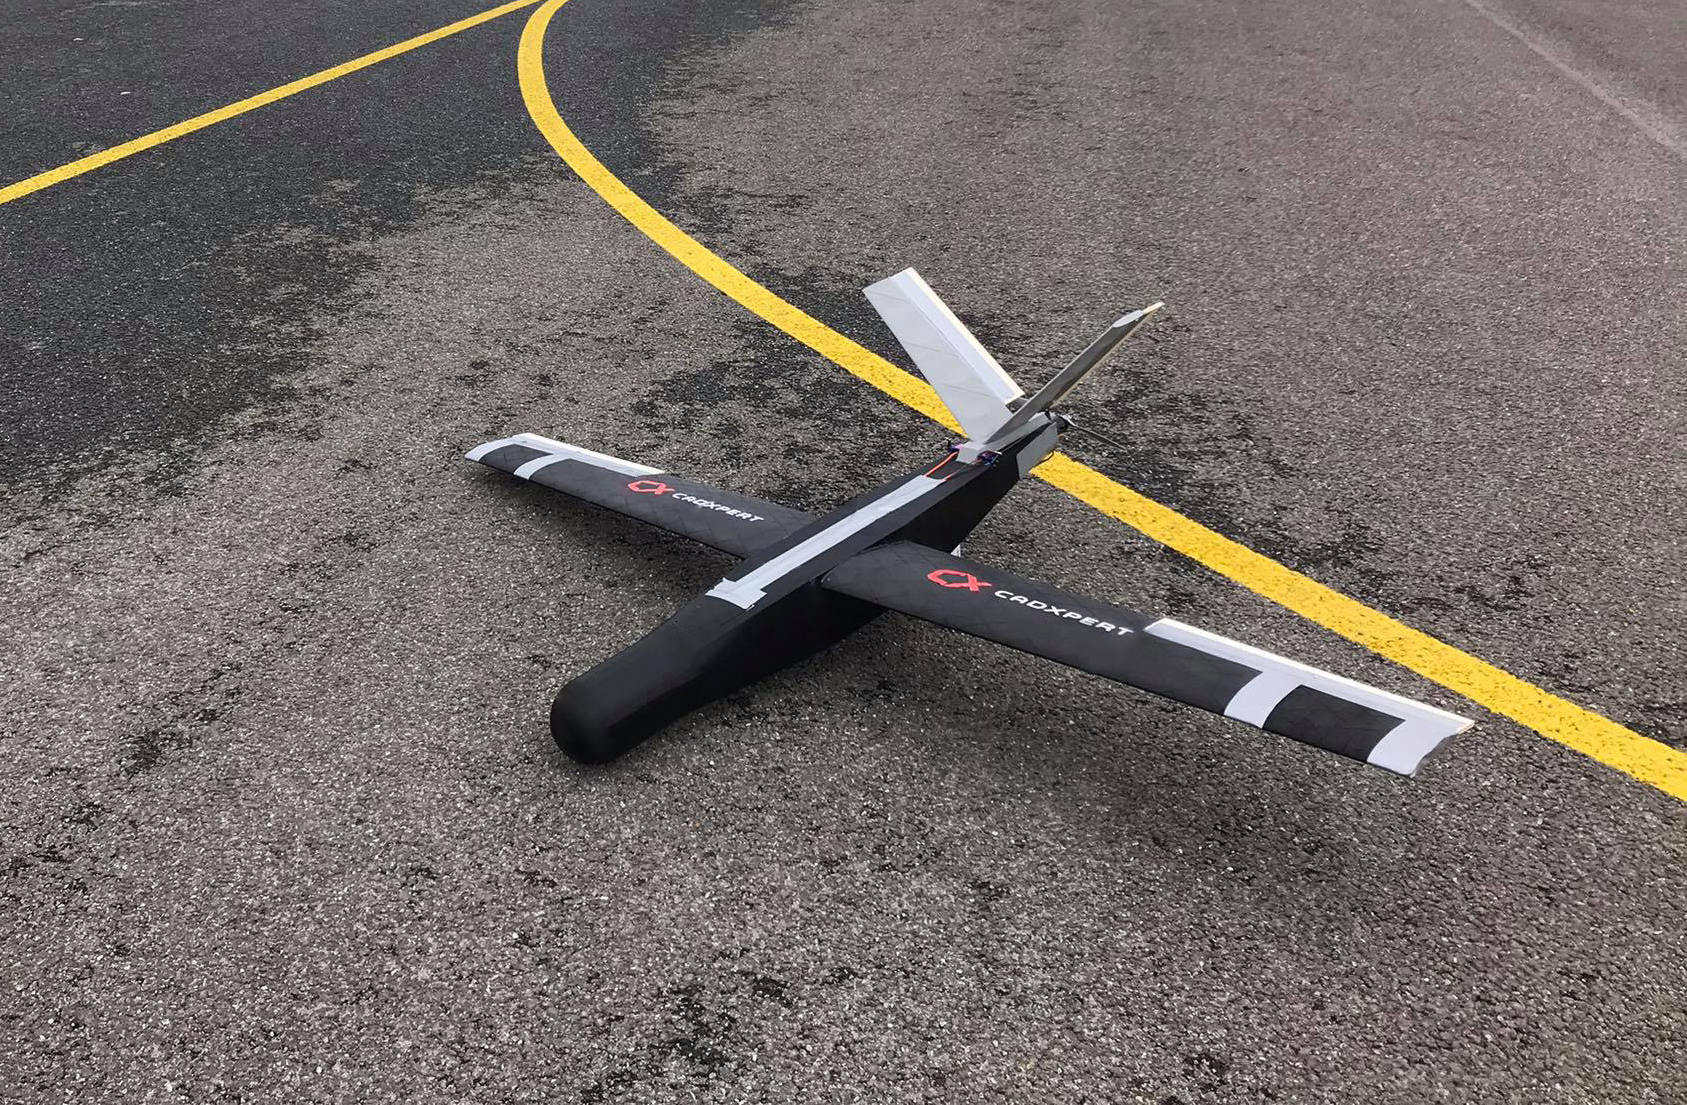 Wojskowy dron z drukarki 3D osiąga prędkość 110 km/h i pułap 500 m